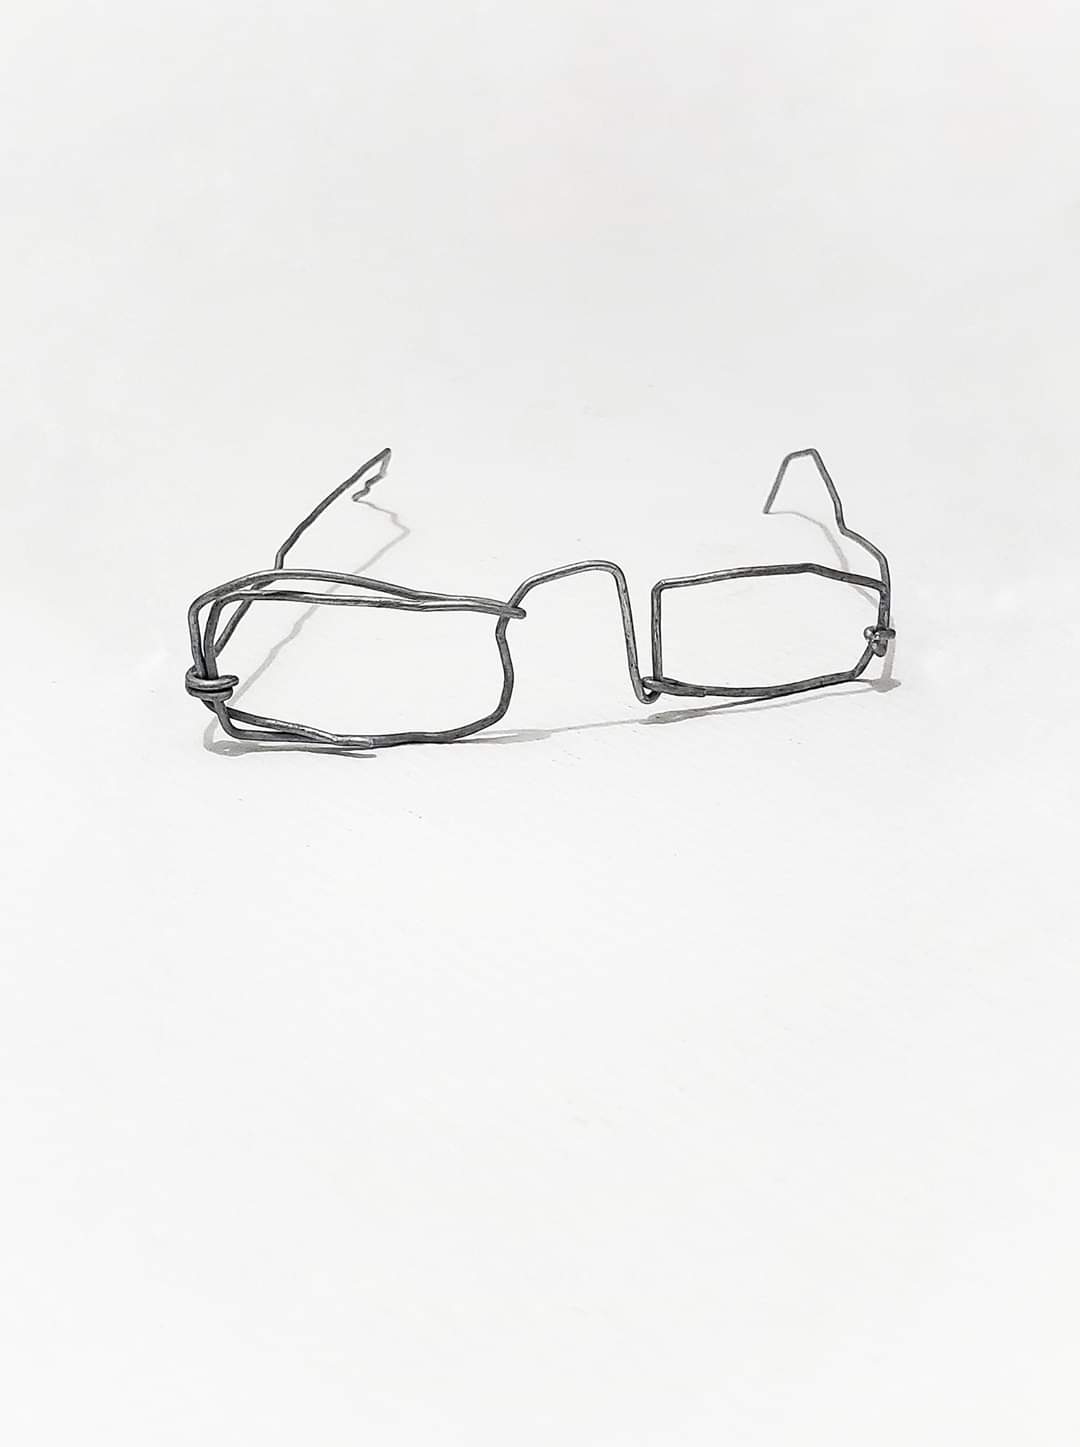 بيع نظارة طفل نازح بـ 2500000 ريال بالمزاد العلني